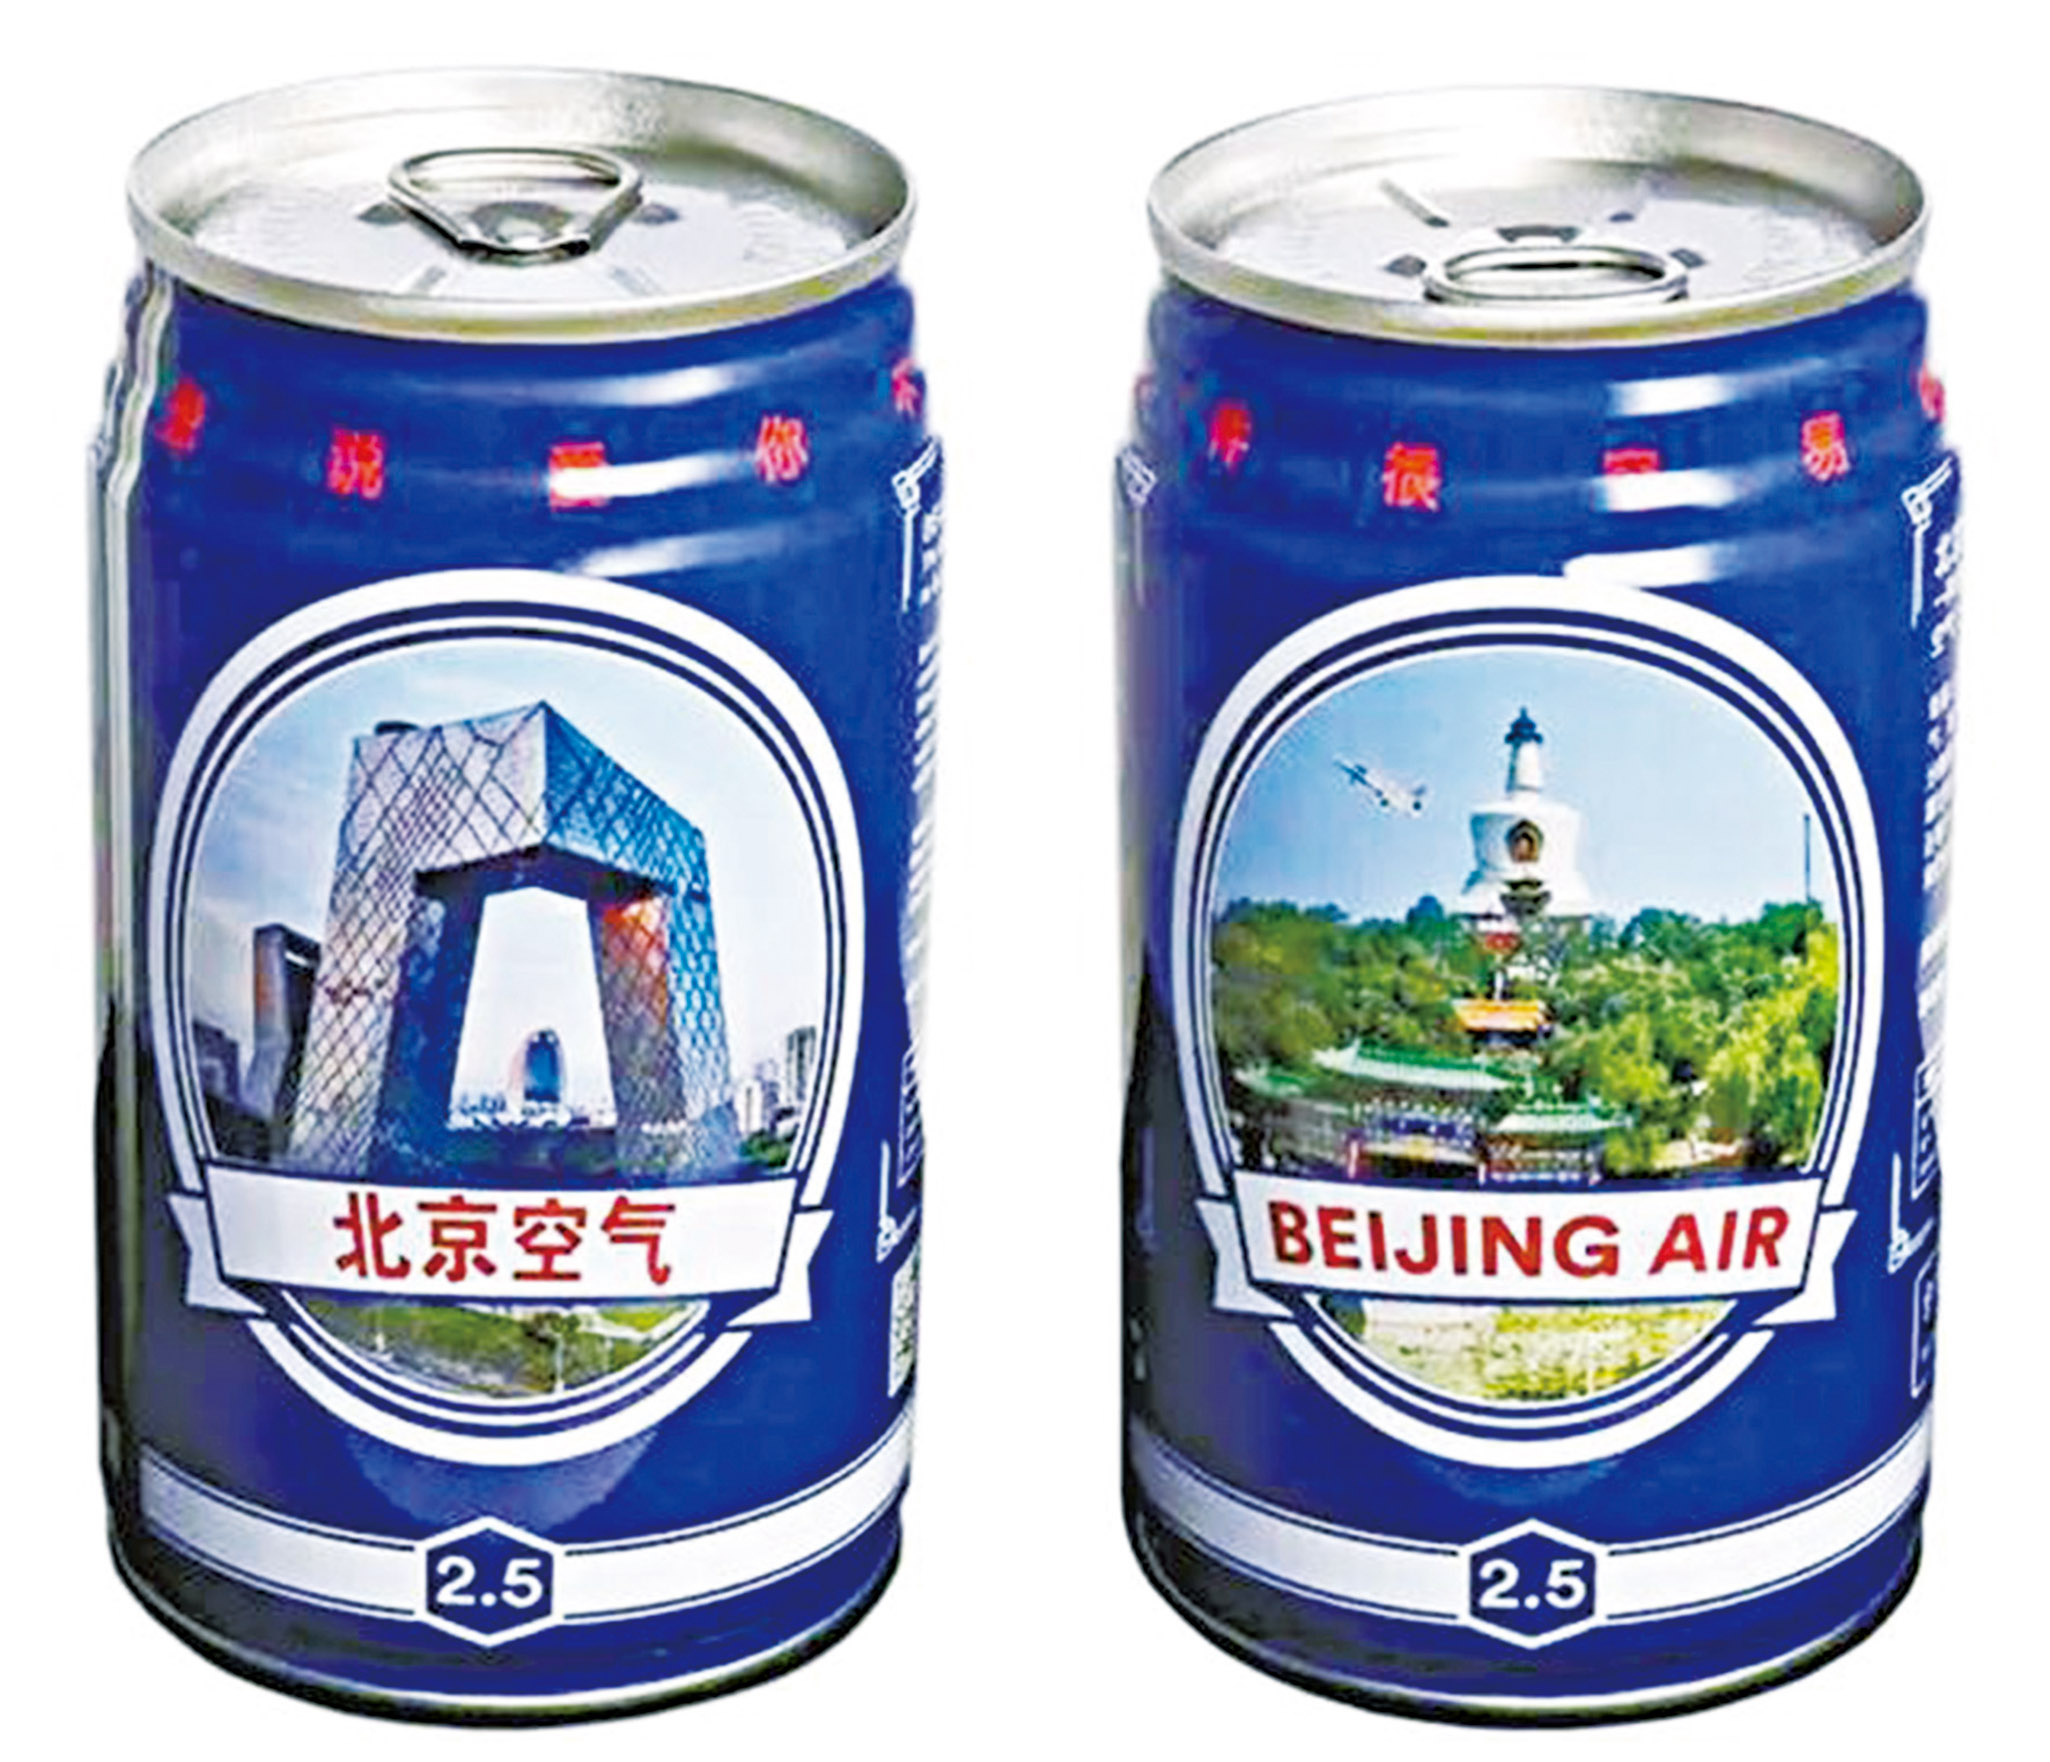 罐裝北京空氣反熱賣